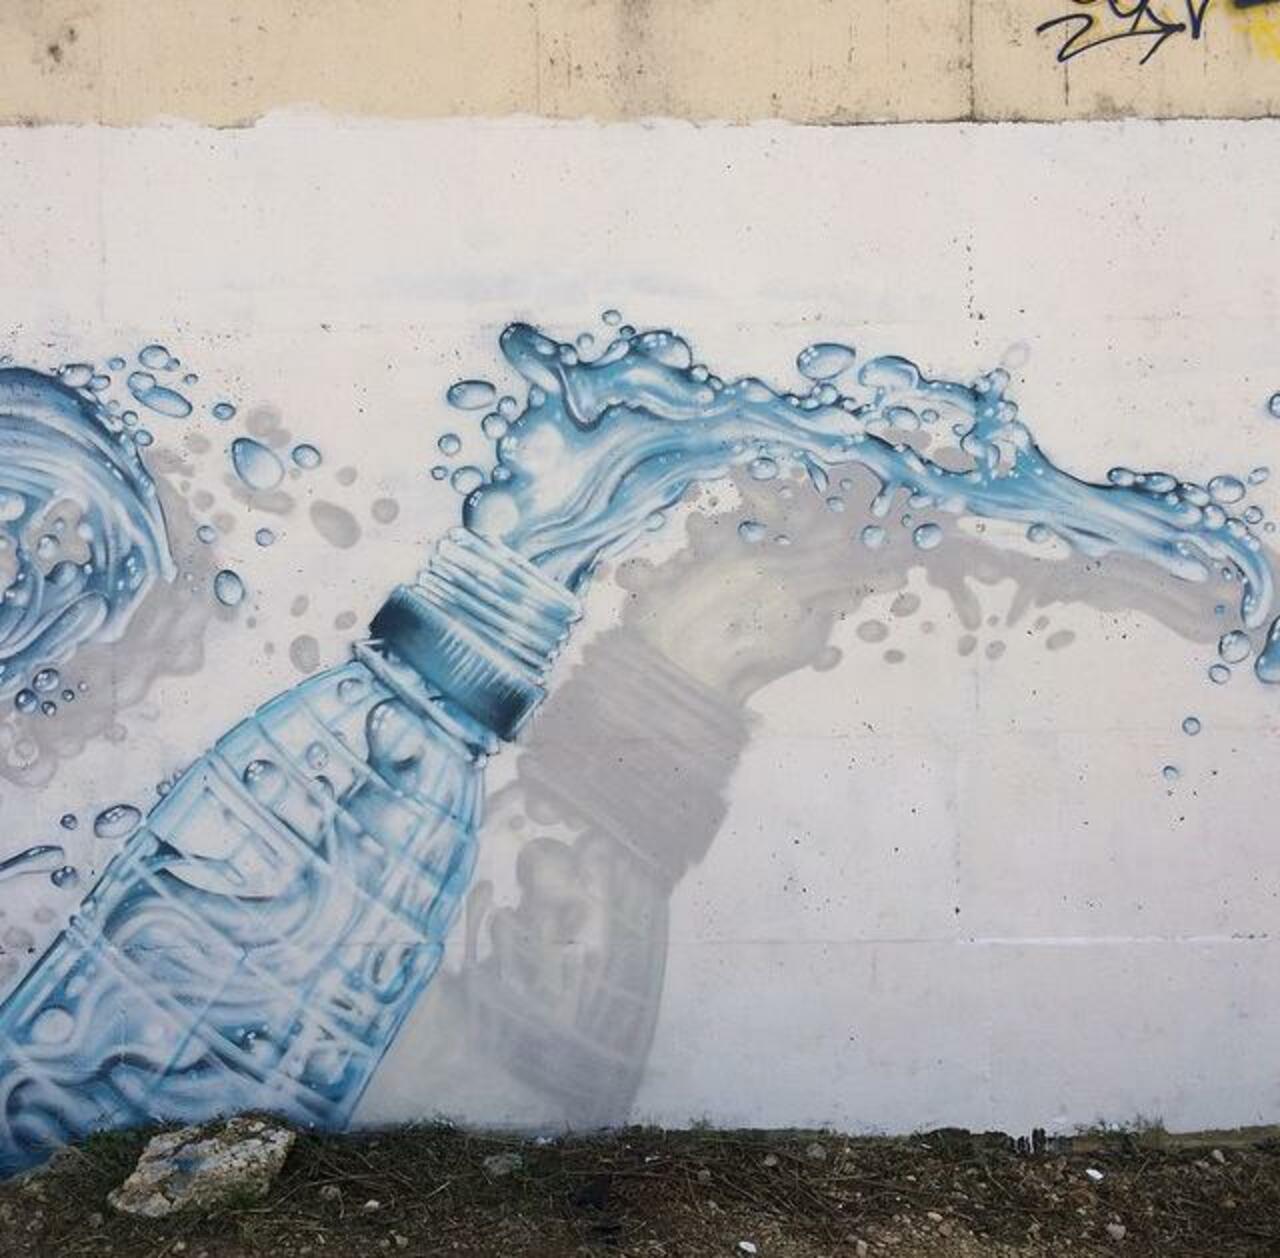 'Bottle'
Class new Street Art by JeazeOner 

#art #arte #graffiti #streetart http://t.co/ixdsl7T0cf